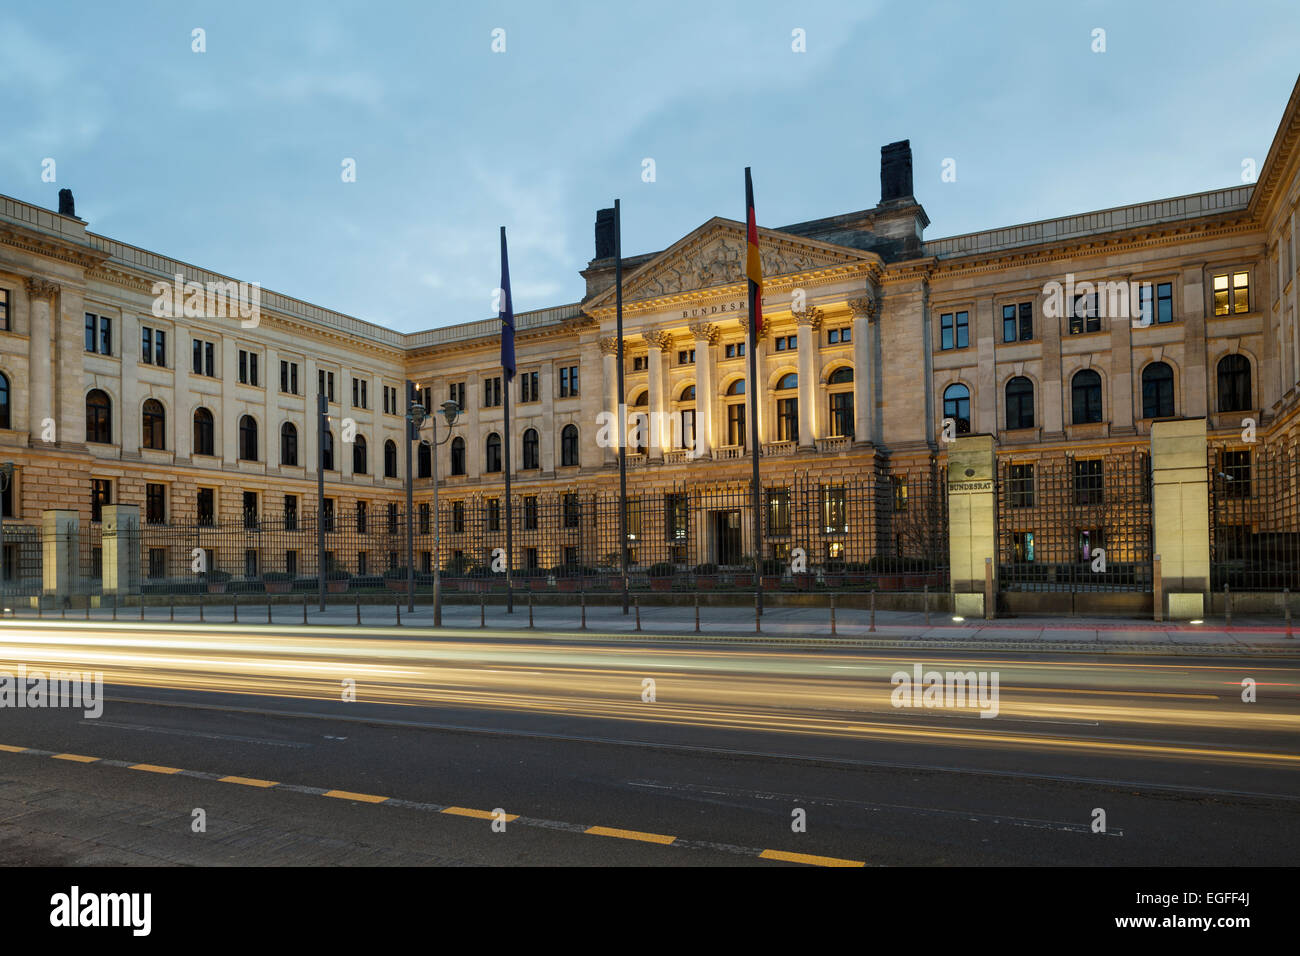 Bundesrat d'immeuble sur Leipziger Strasse (l'ancienne Chambre des seigneurs de Prusse), Berlin, Allemagne Banque D'Images